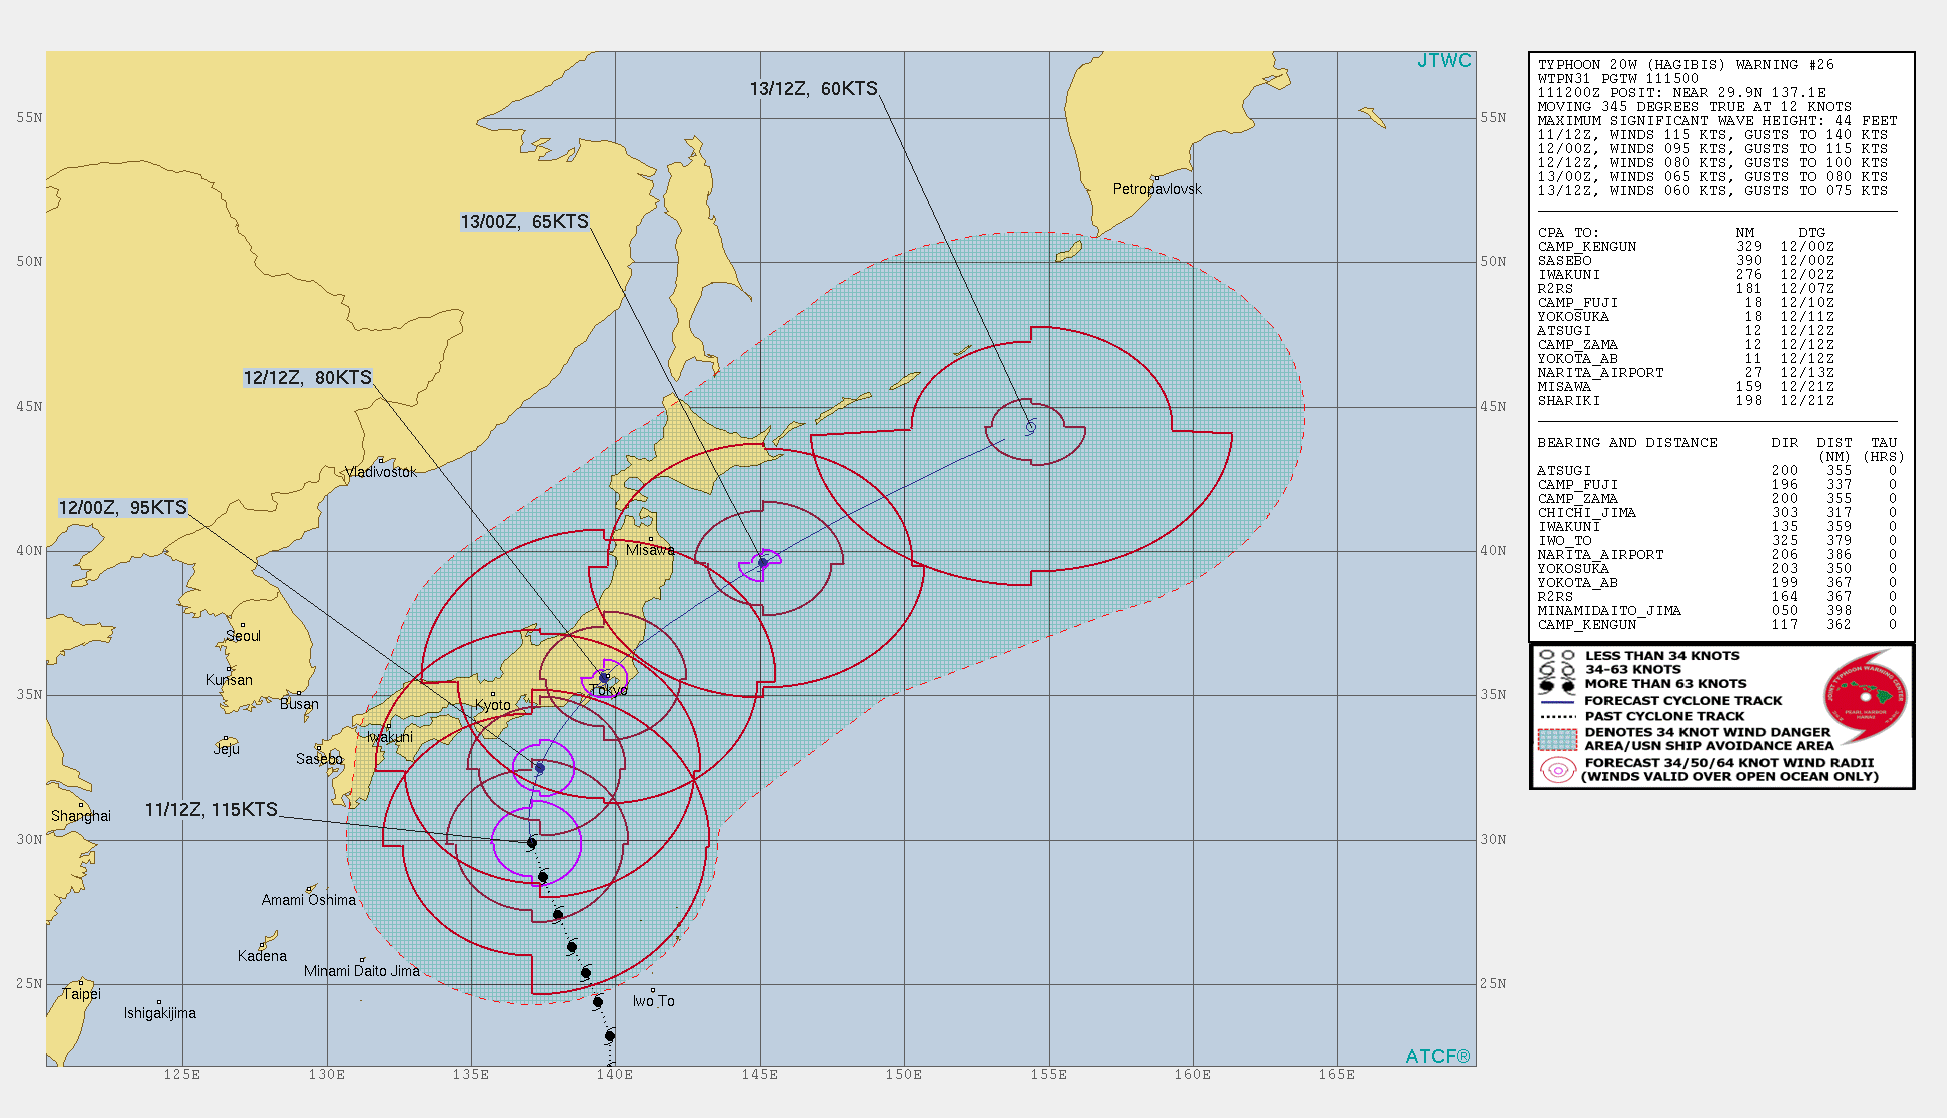 joint typhoon weather